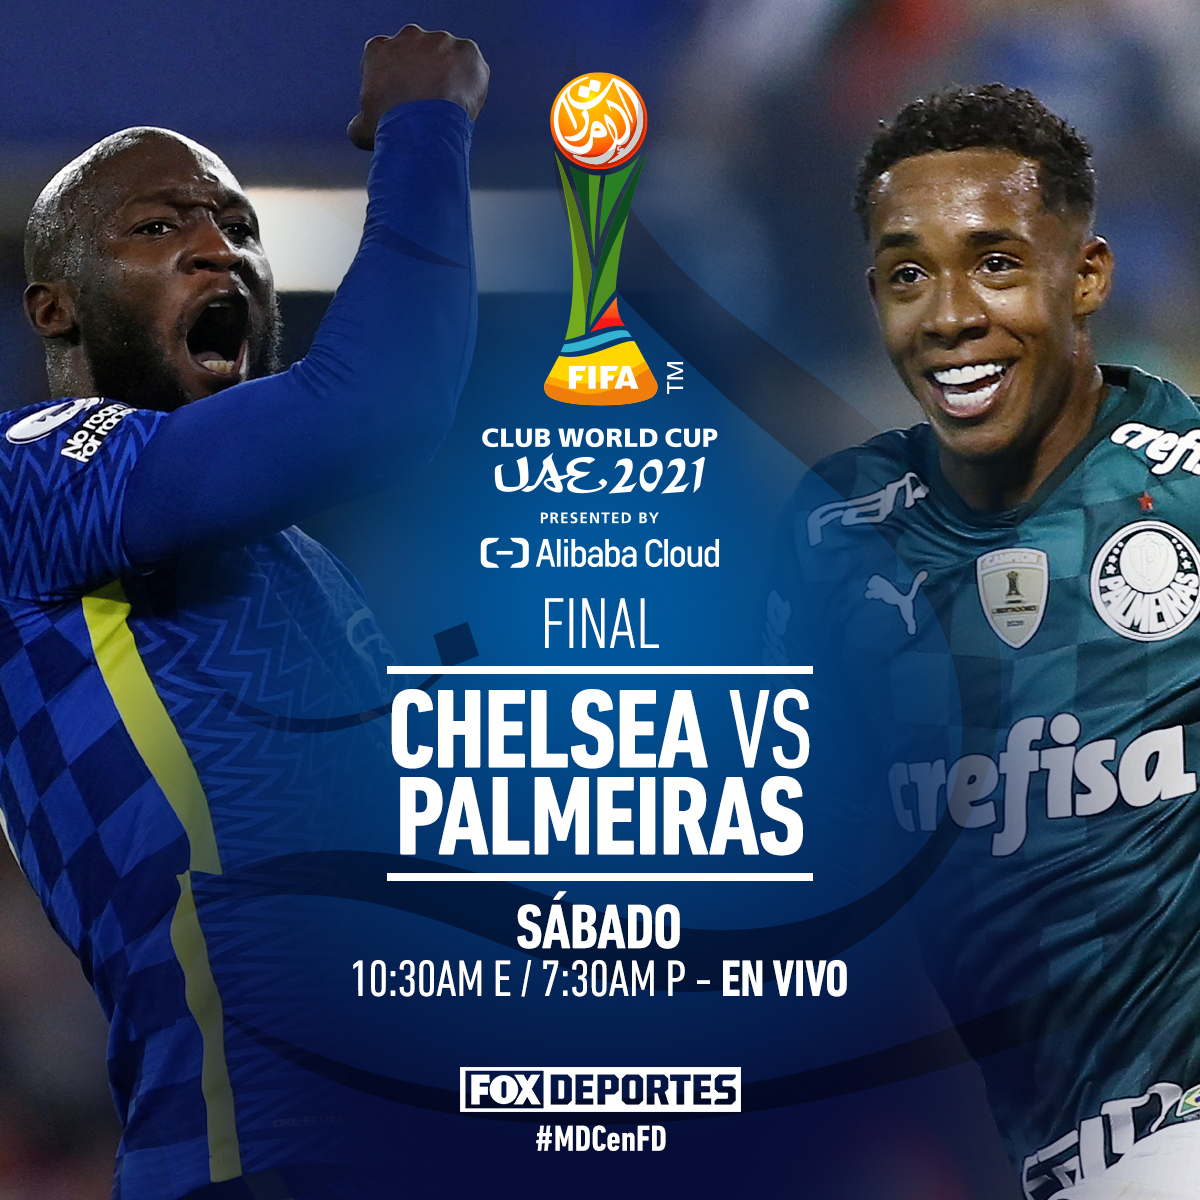 X 上的 FOX Deportes：「💥 ¡Chelsea vs Palmeiras por el título! 💥 Duelazo que podrás disfrutar ESTE SÁBADO por la pantalla de FOX Deportes